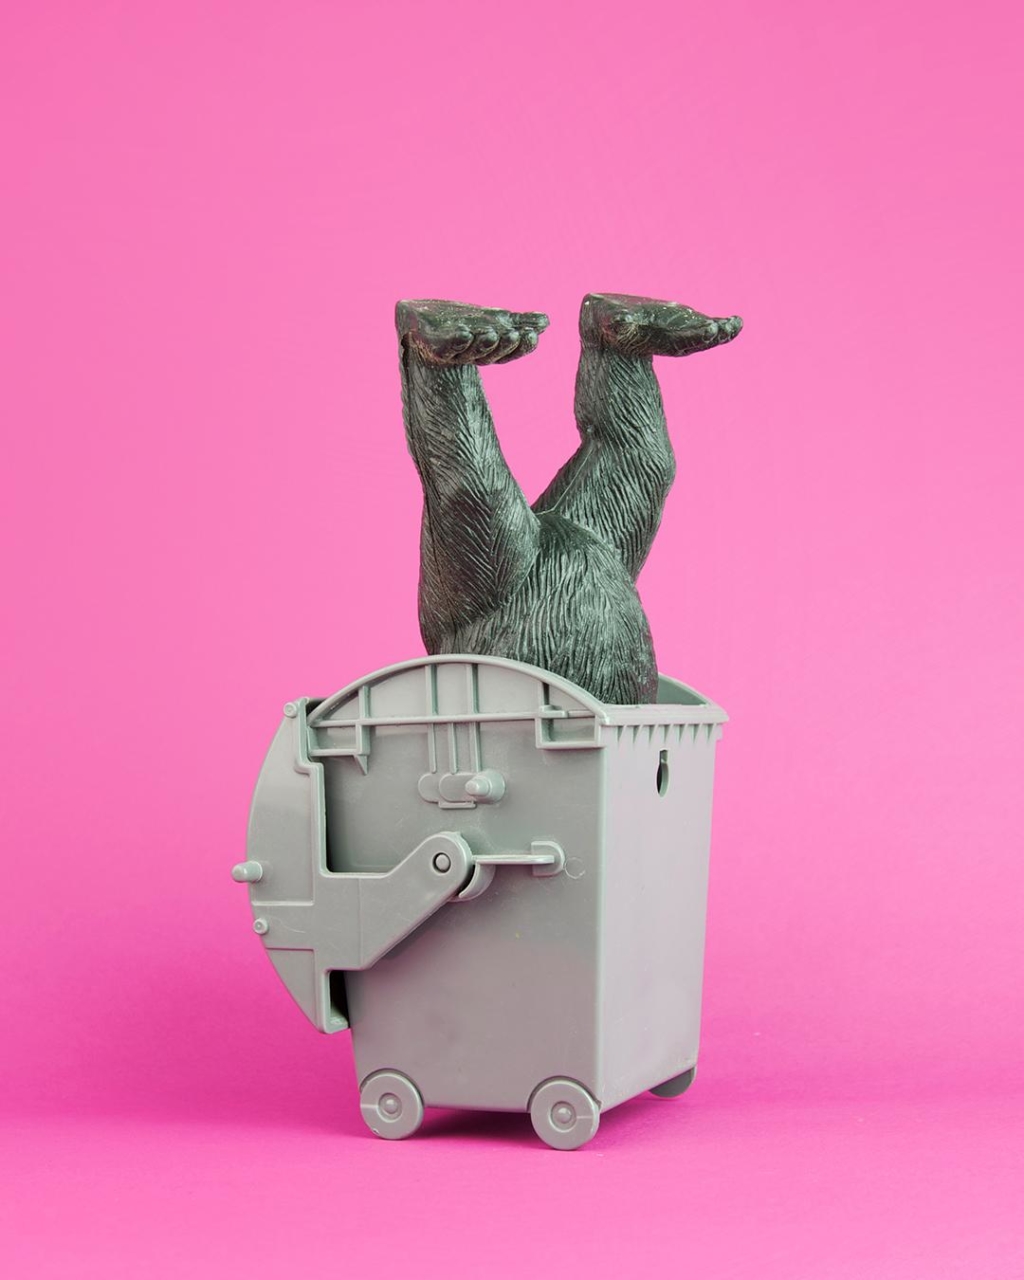 Affenfigur steckt kopfüber in Müllcontainer vor pinkem Hintergrund